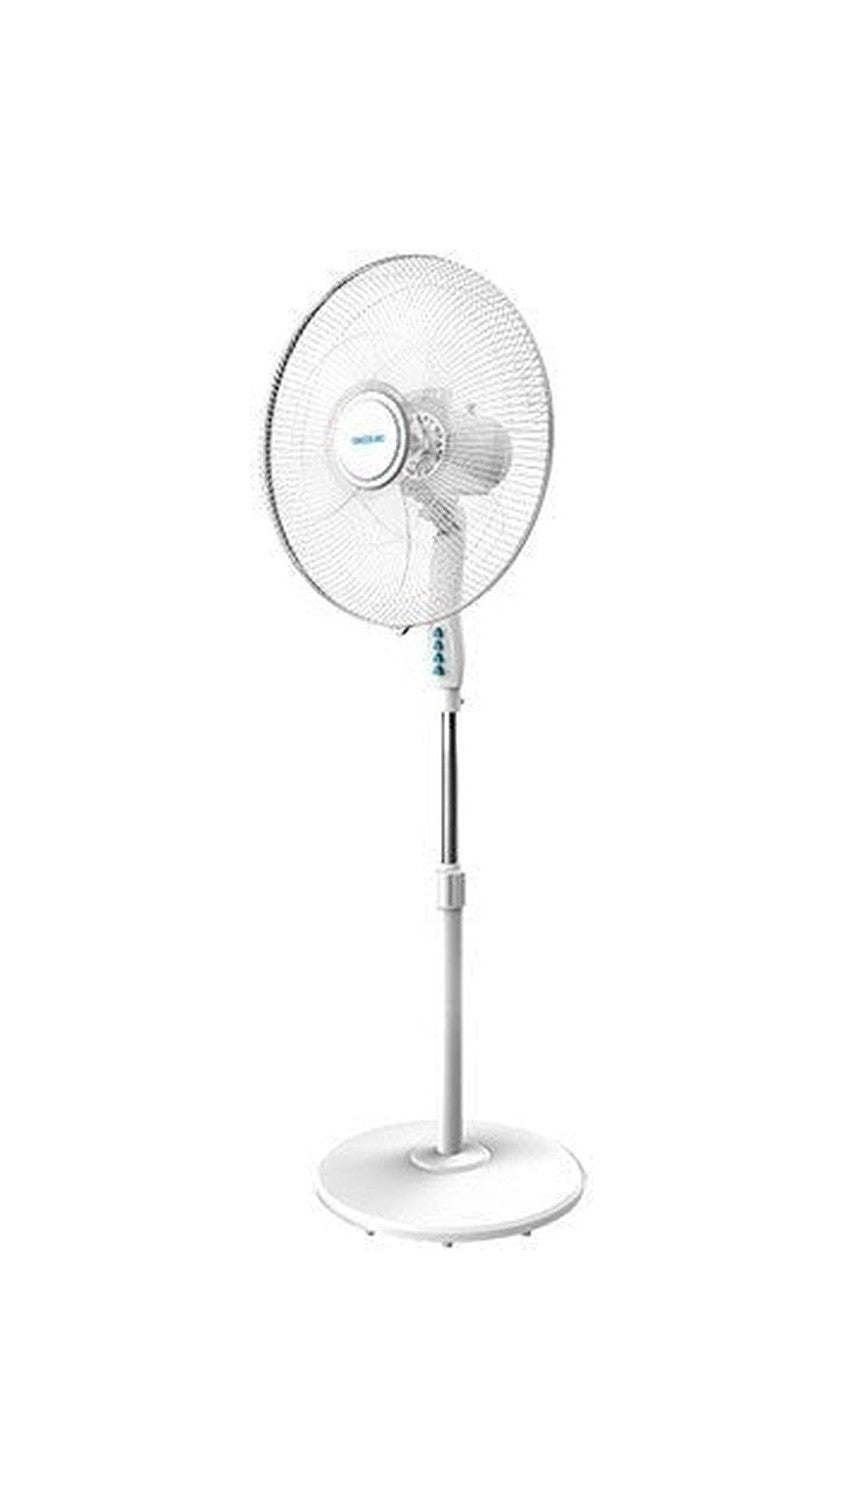 Freistehender Fan Cecotec Energysilenz 600 Maxflow Ø 45 cm 70W Weiß